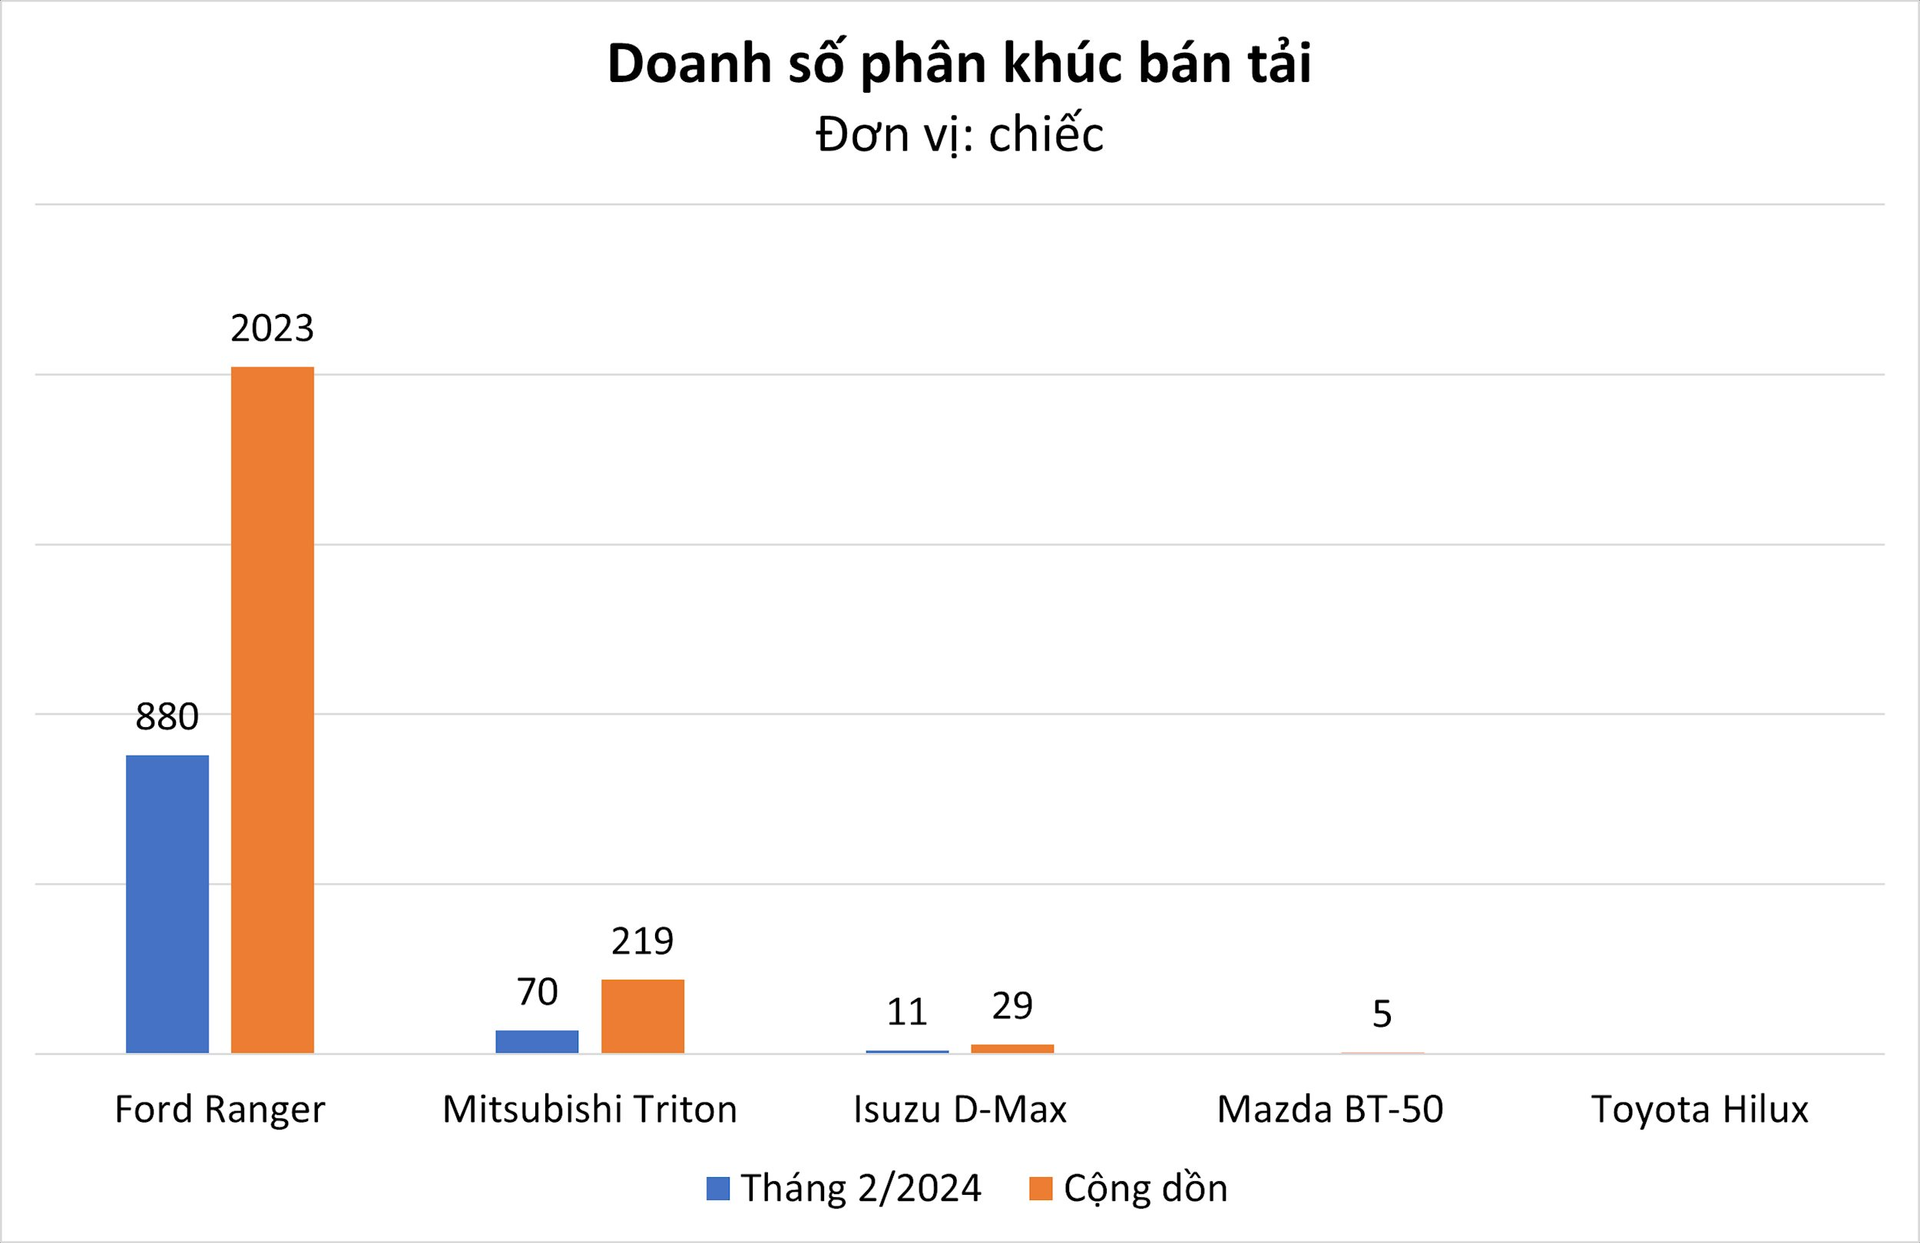 Không hổ là 'vua doanh số' toàn thị trường Việt Nam, mẫu xe này bán gấp 10 lần toàn bộ đối thủ cùng phân khúc cộng lại- Ảnh 1.